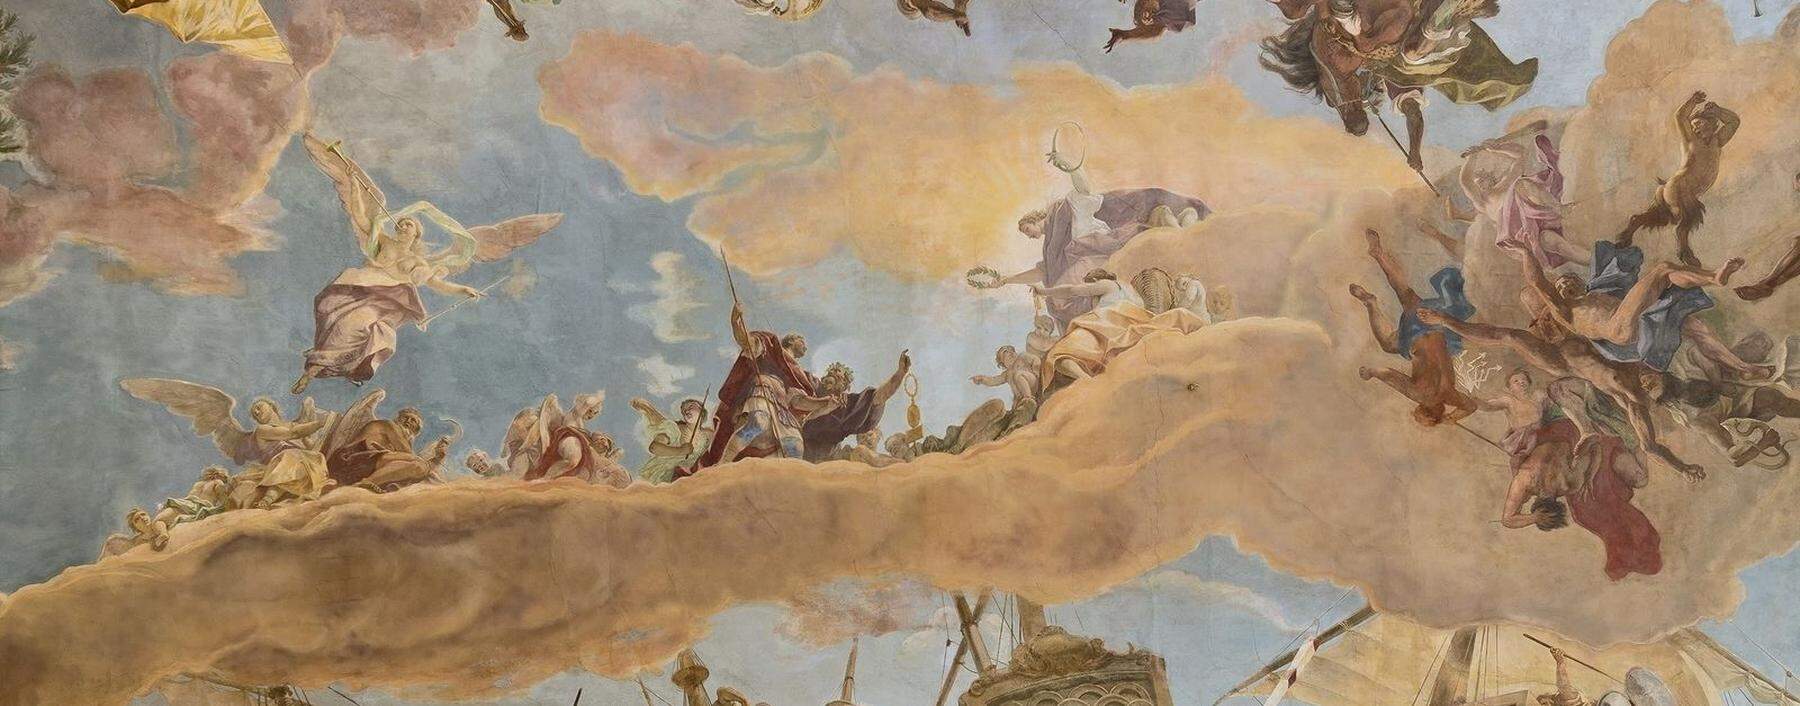 Von den Lastern gelöst auf dem Weg zur Tugend: der Läuterungsprozess des jungen Helden, dargestellt von Sebastiano Ricci. 